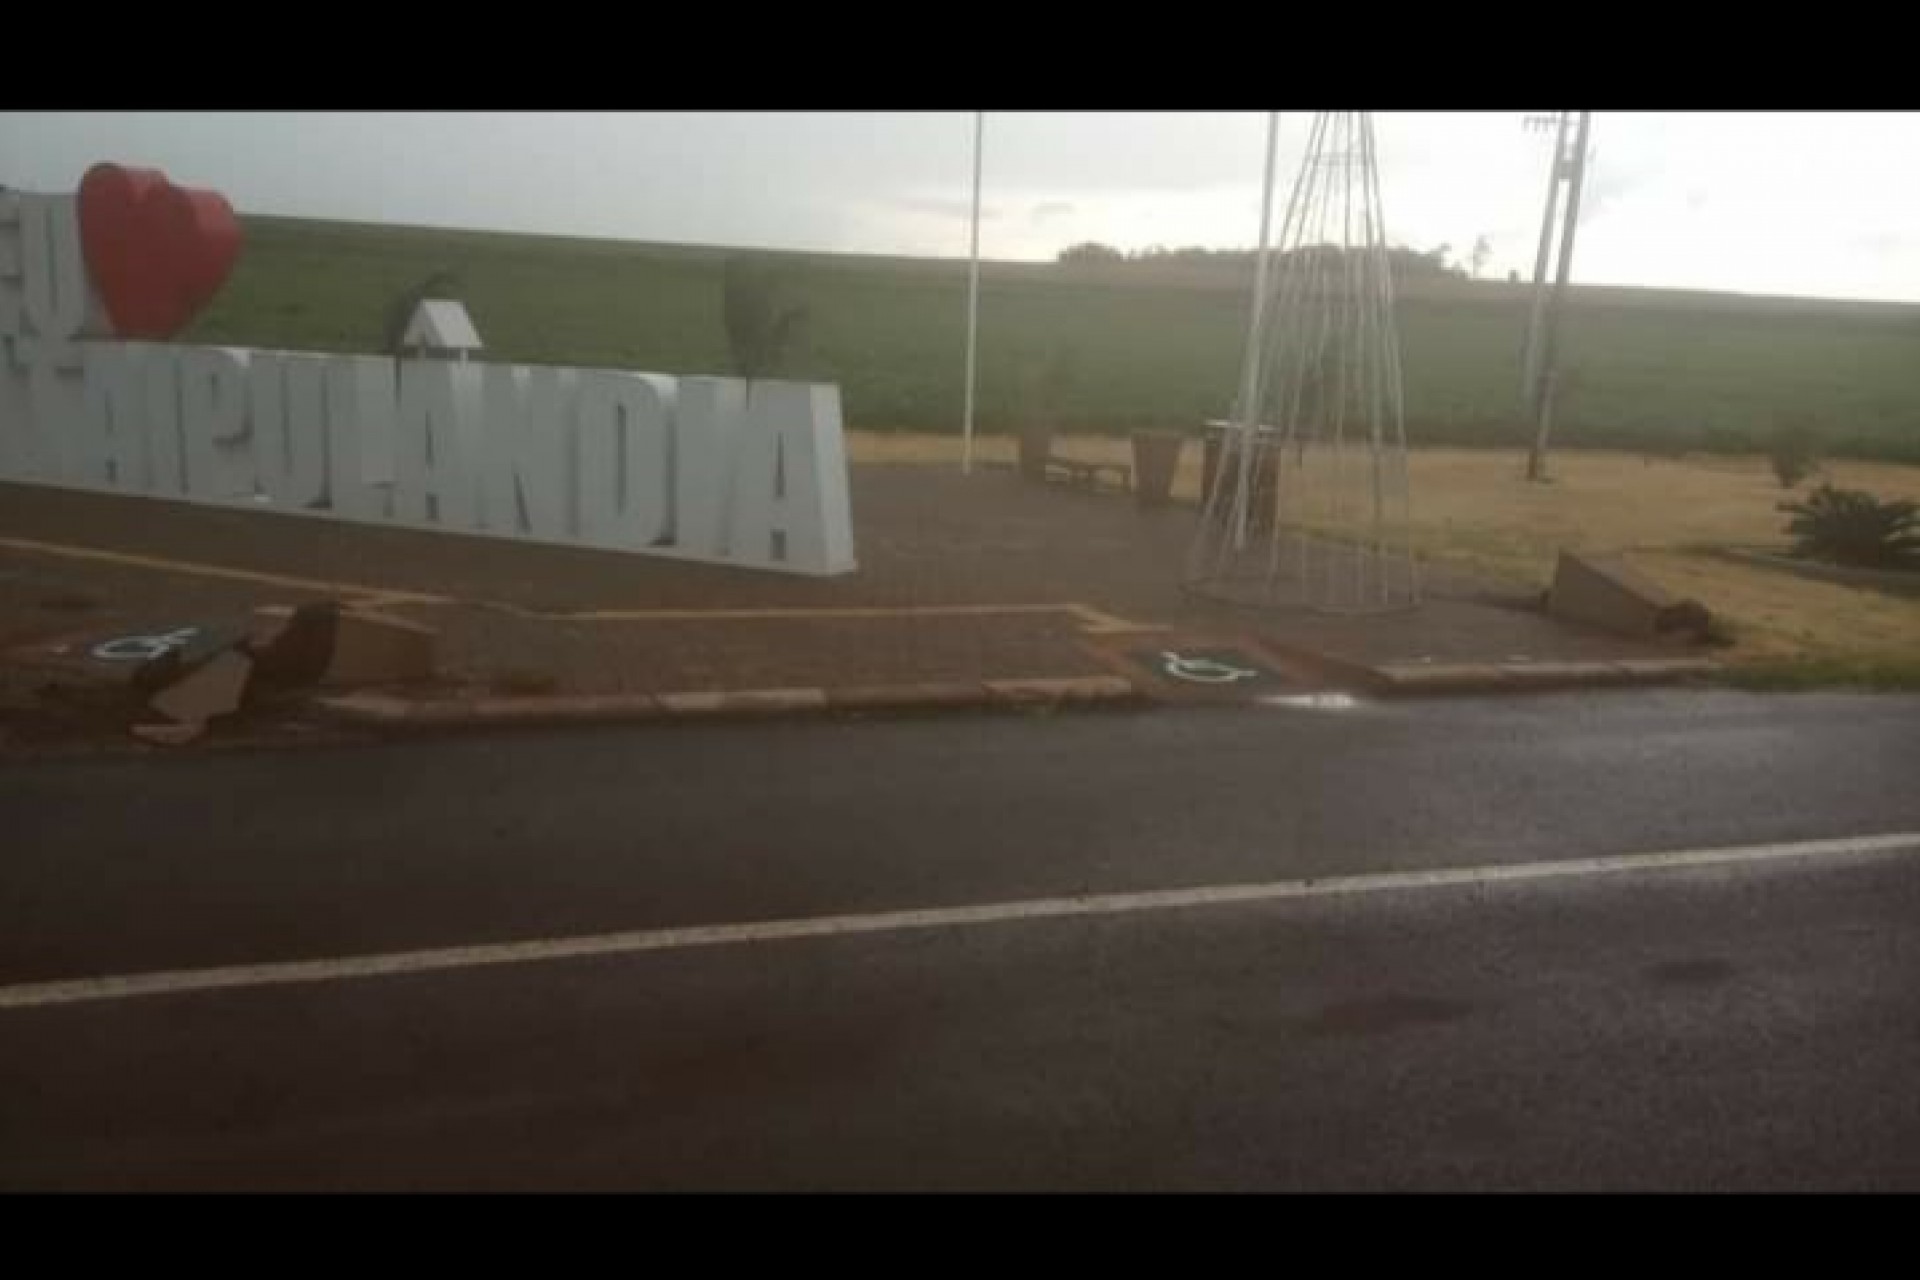 Vandalismo: Estruturas do Portal de Acesso à Itaipulândia são danificadas por vândalos